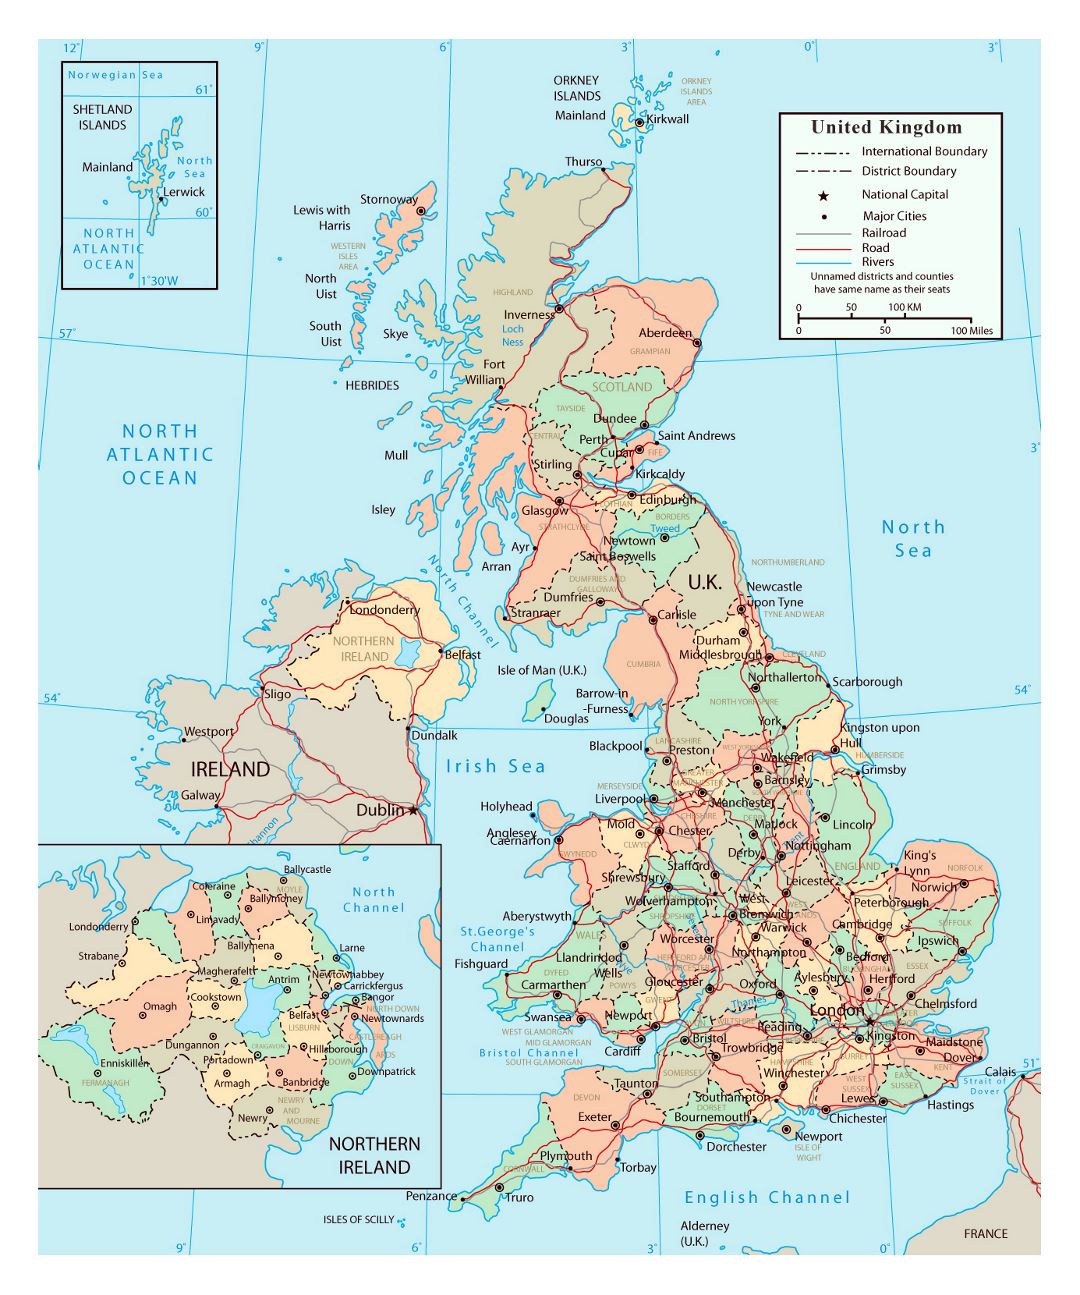 Grande mapa político y administrativo del Reino Unido con carreteras, ferrocarriles y ciudades importantes